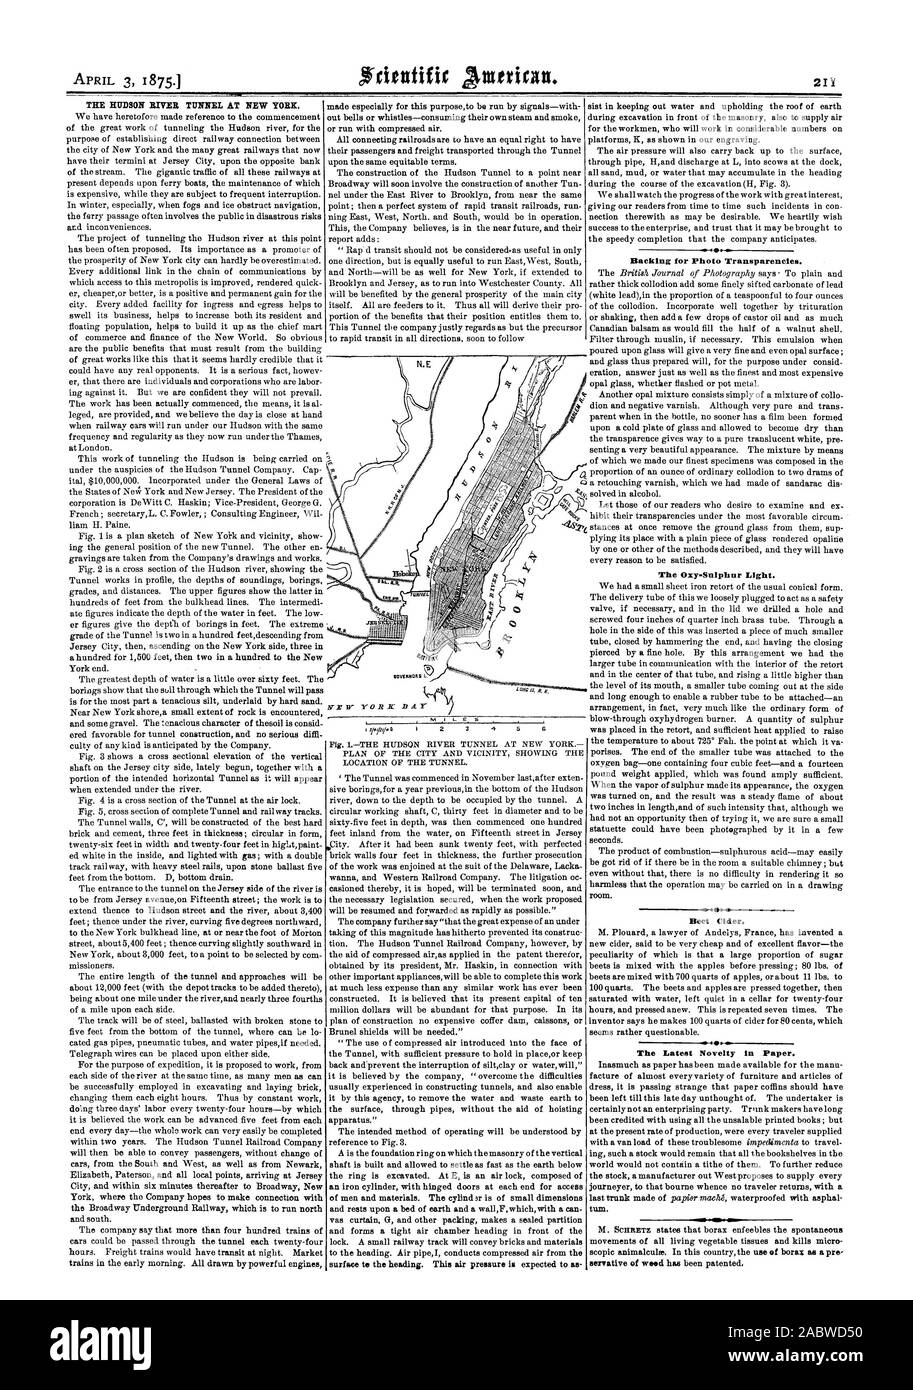 Le tunnel de la rivière Hudson À NEW YORK., Scientific American, 1875-04-03 Banque D'Images